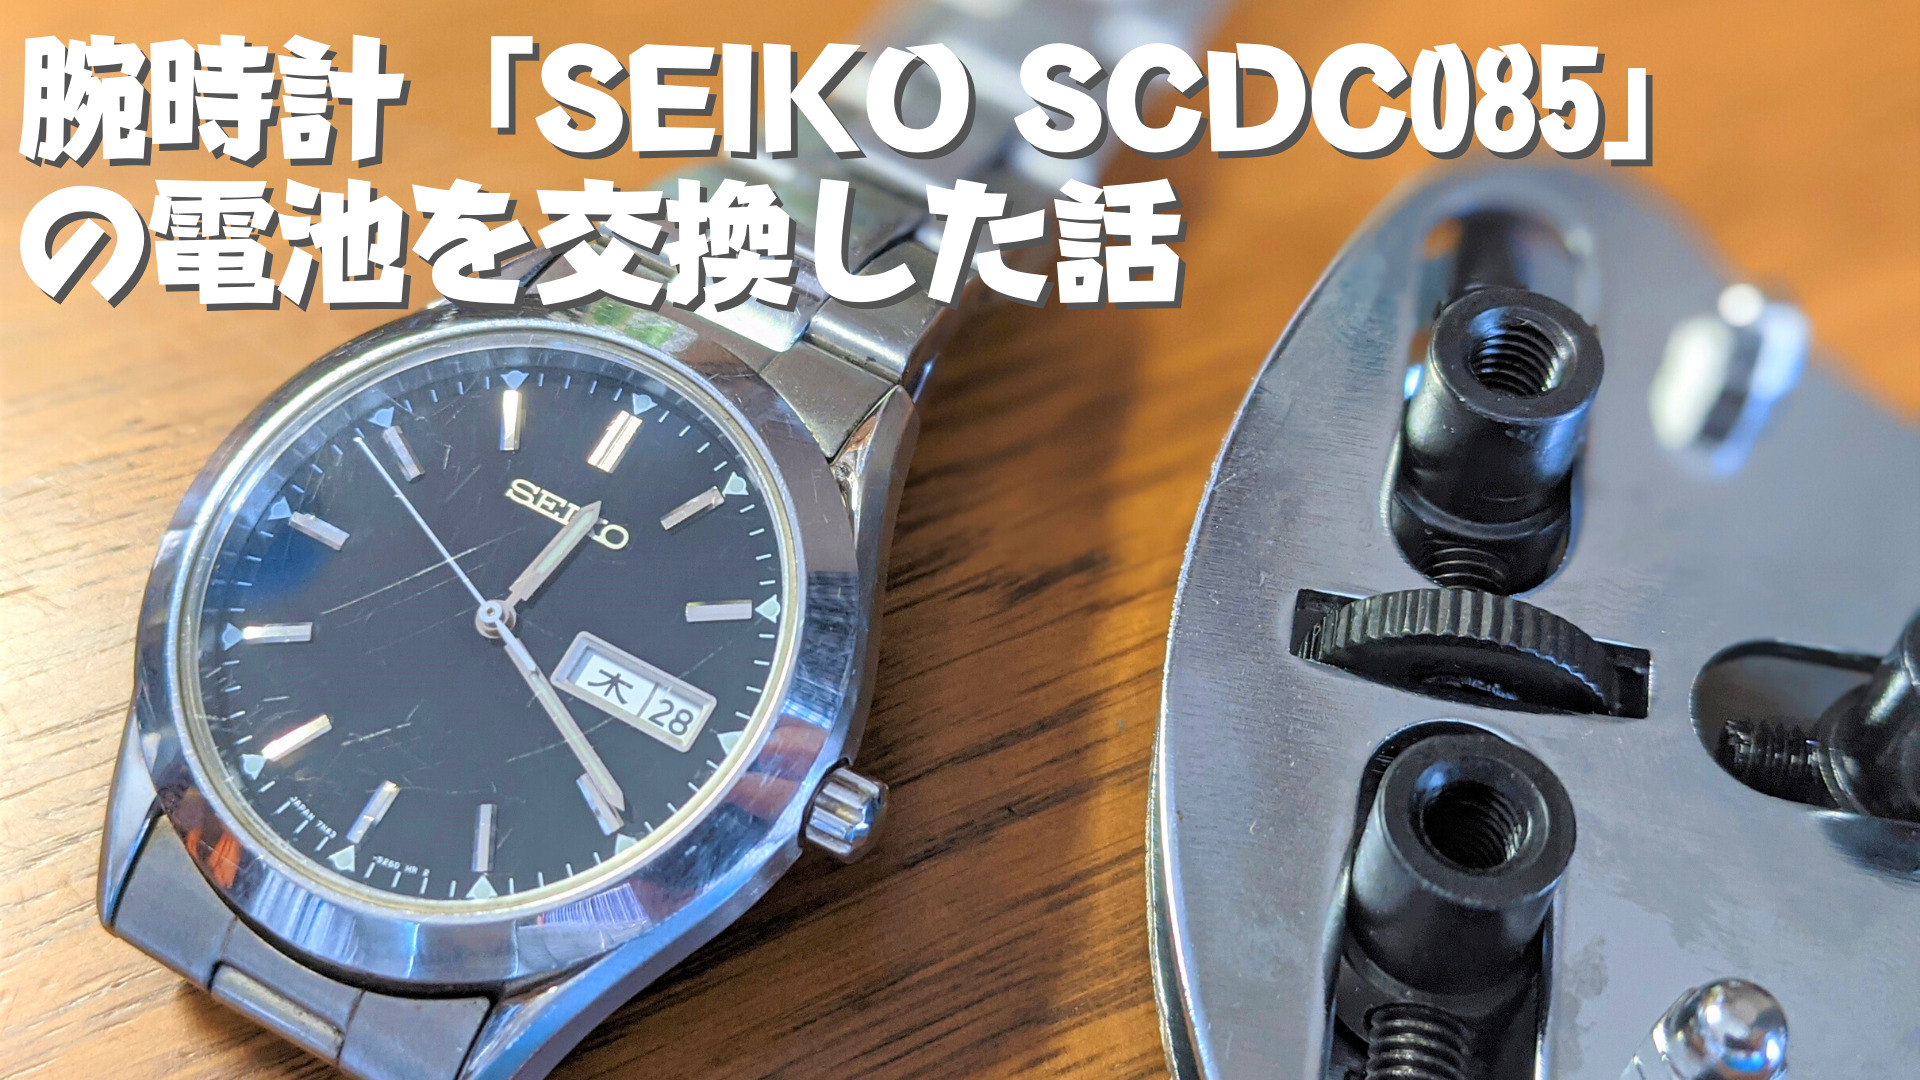 腕時計「SEIKO SCDC085」の電池を自分で交換した話-title